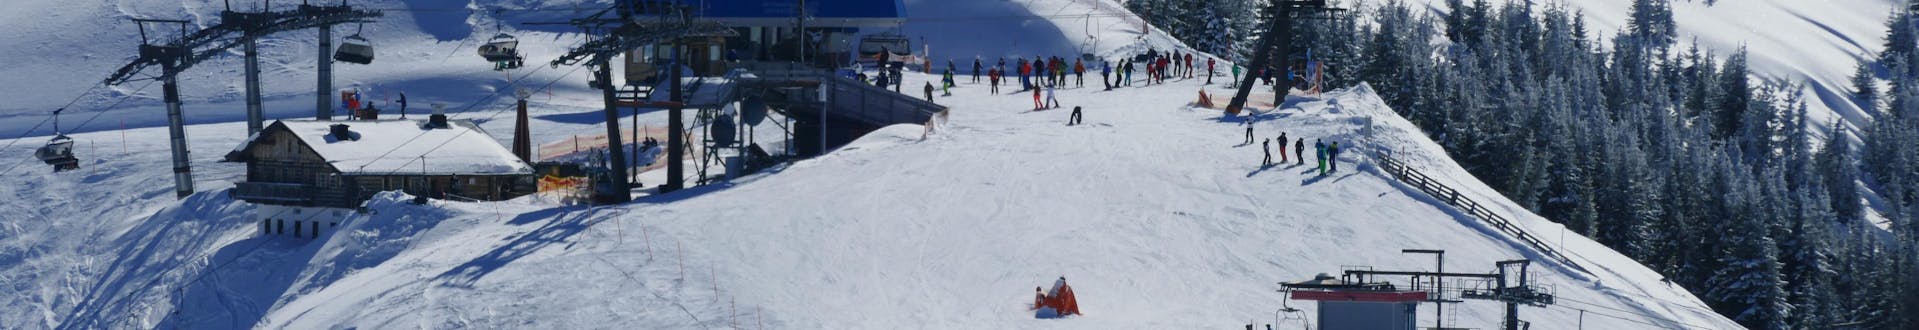 Volwassenen en kinderen skiën in skigebied Grossarl.